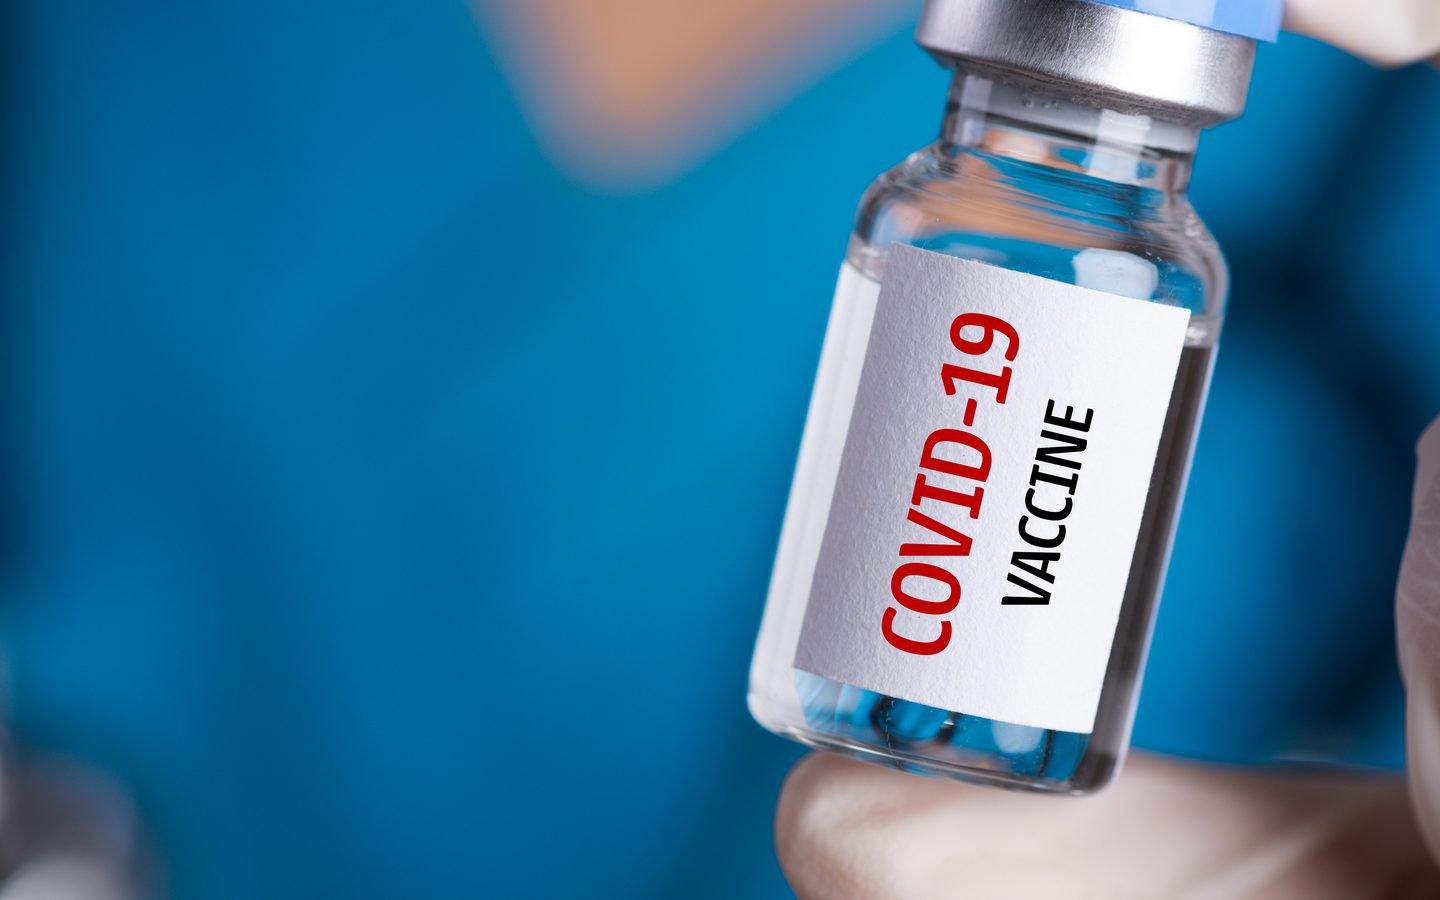 WHO: Vaccine vẫn có giá trị bảo vệ cao trước đại dịch COVID-19